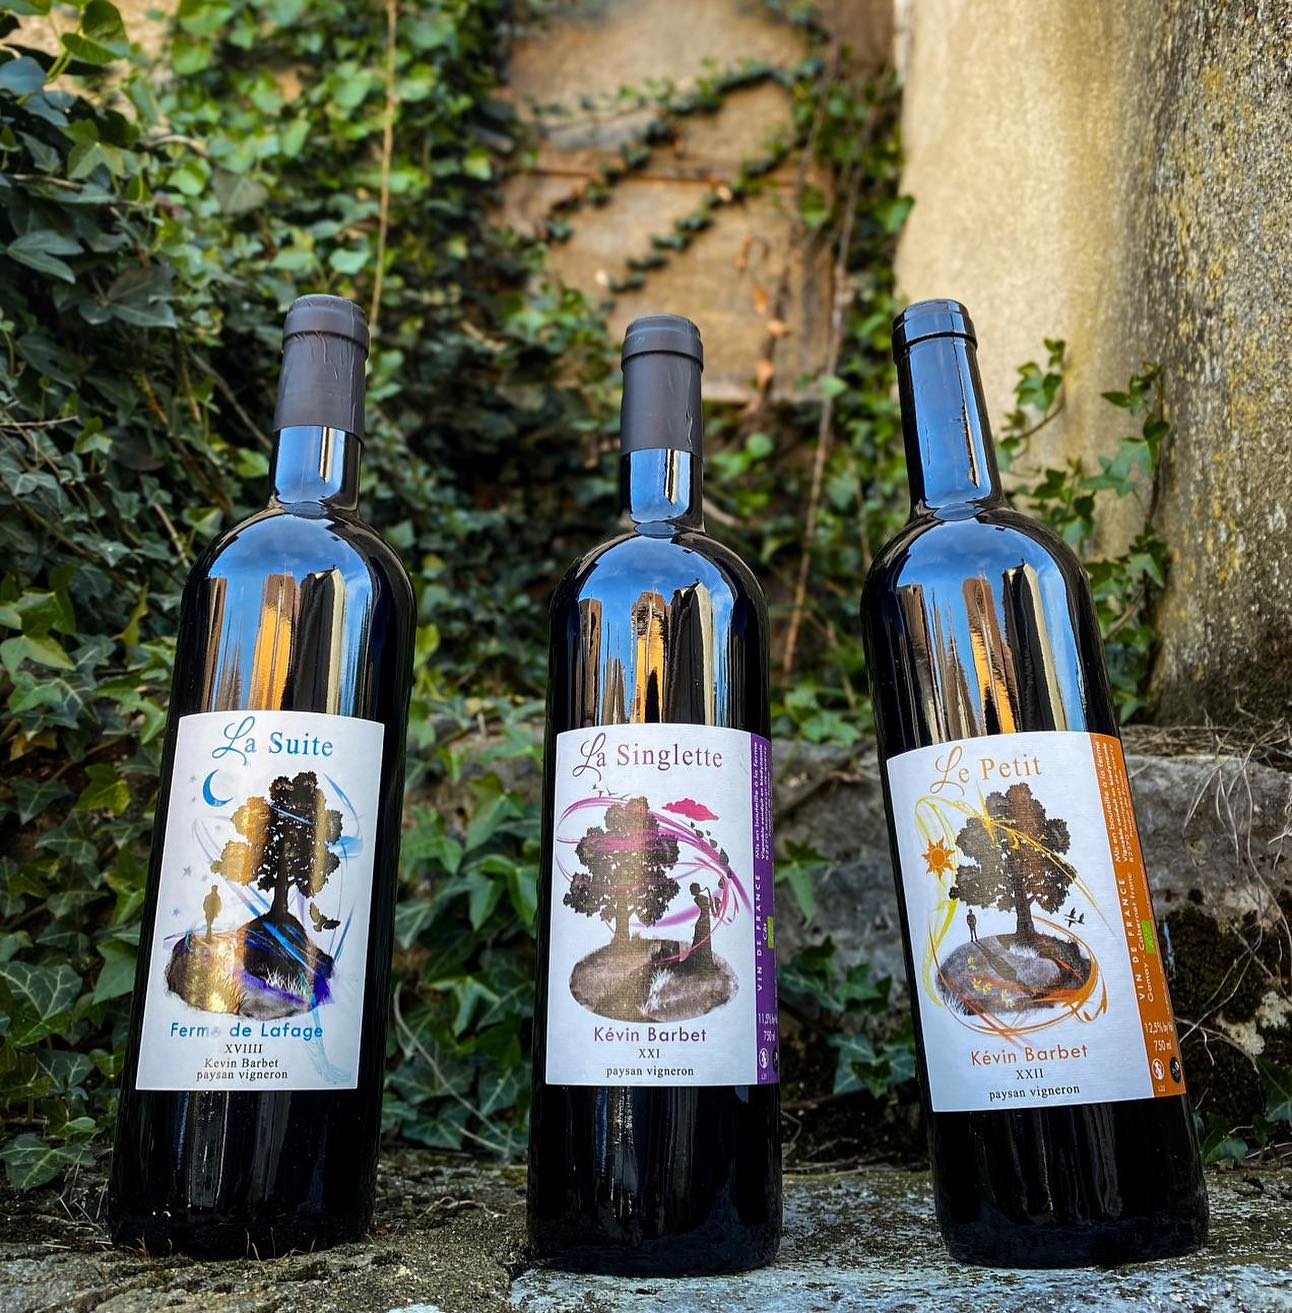 Originaire de la Ni&egrave;vre, K&eacute;vin Barbet a repris le domaine de Lafage situ&eacute; sur l&rsquo;appellation Coteaux du Quercy en 2014. 

Le Domaine de Lafage c&rsquo;est d&rsquo;abord une ferme de 36 hectares situ&eacute;e &agrave; Montpez